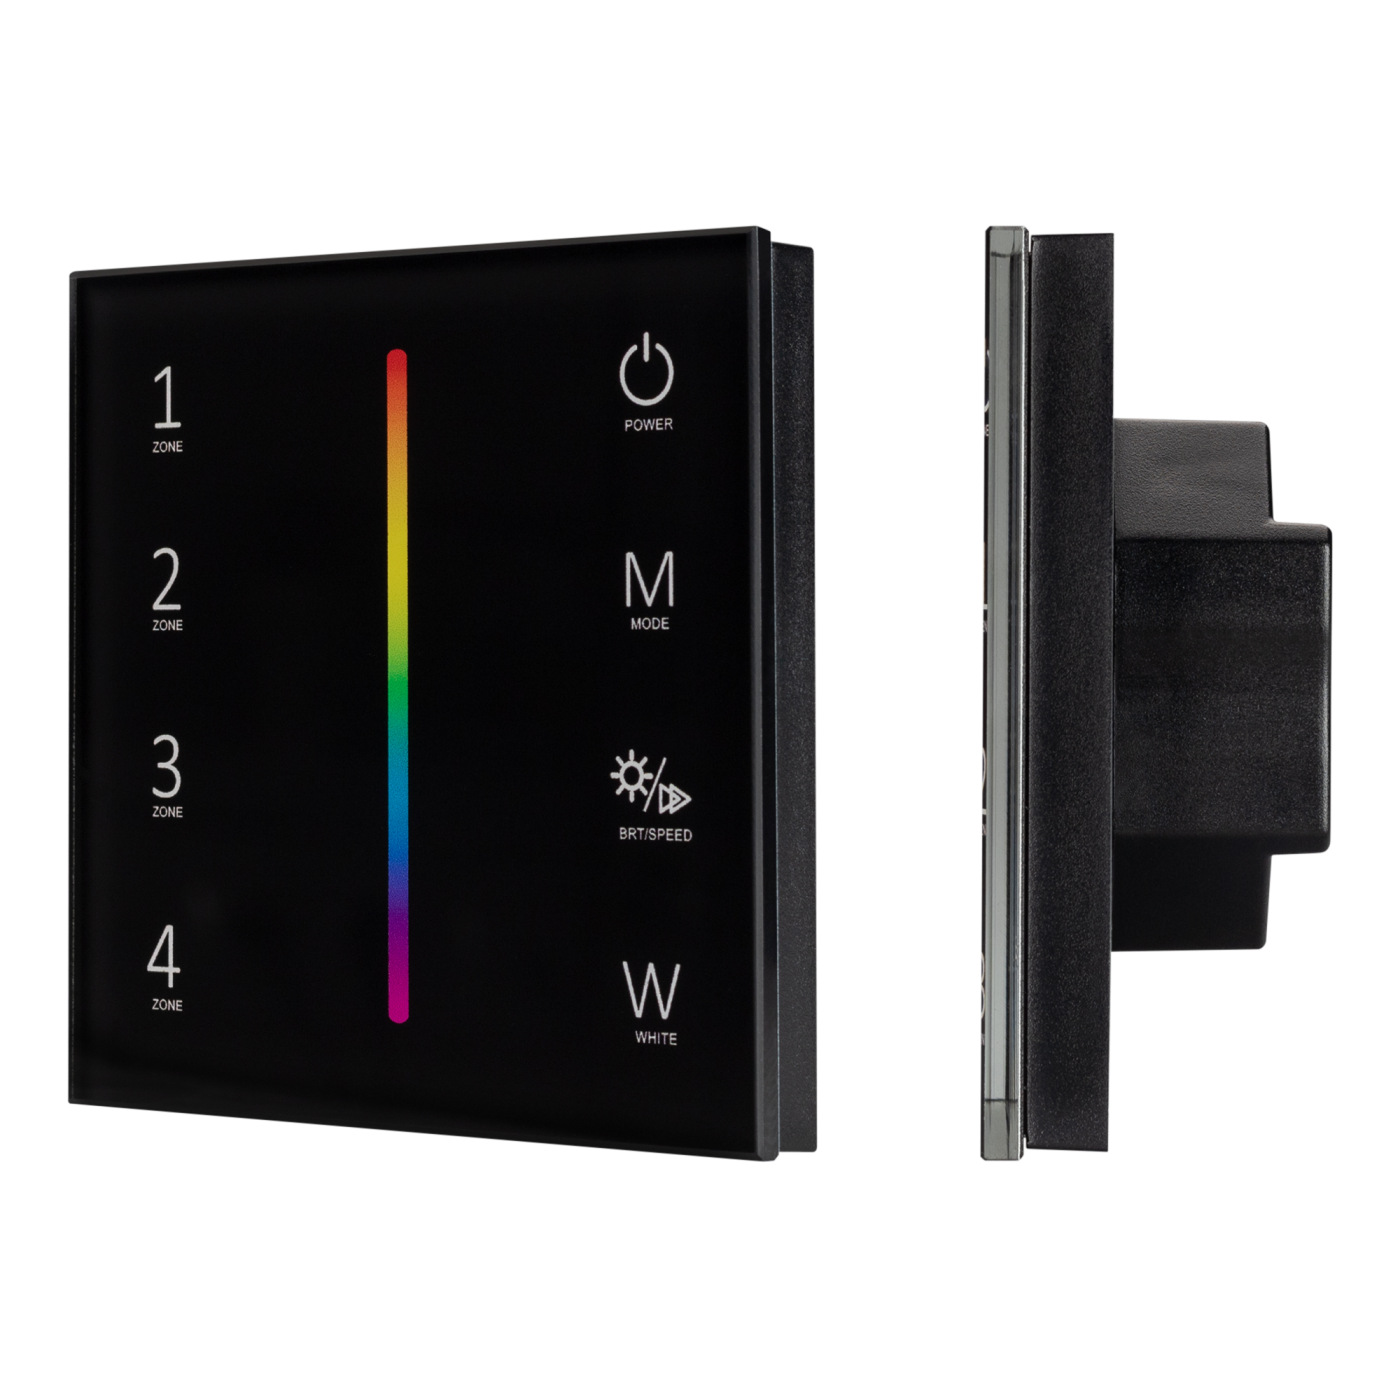 Панель Sens SMART-P30-RGBW Black (230V, 4 зоны, 2.4G) (Arlight, IP20 Пластик, 5 лет) настенная радио панель easybus на 3 зоны и 2 сцены 3в батарейка es b w k8 z3